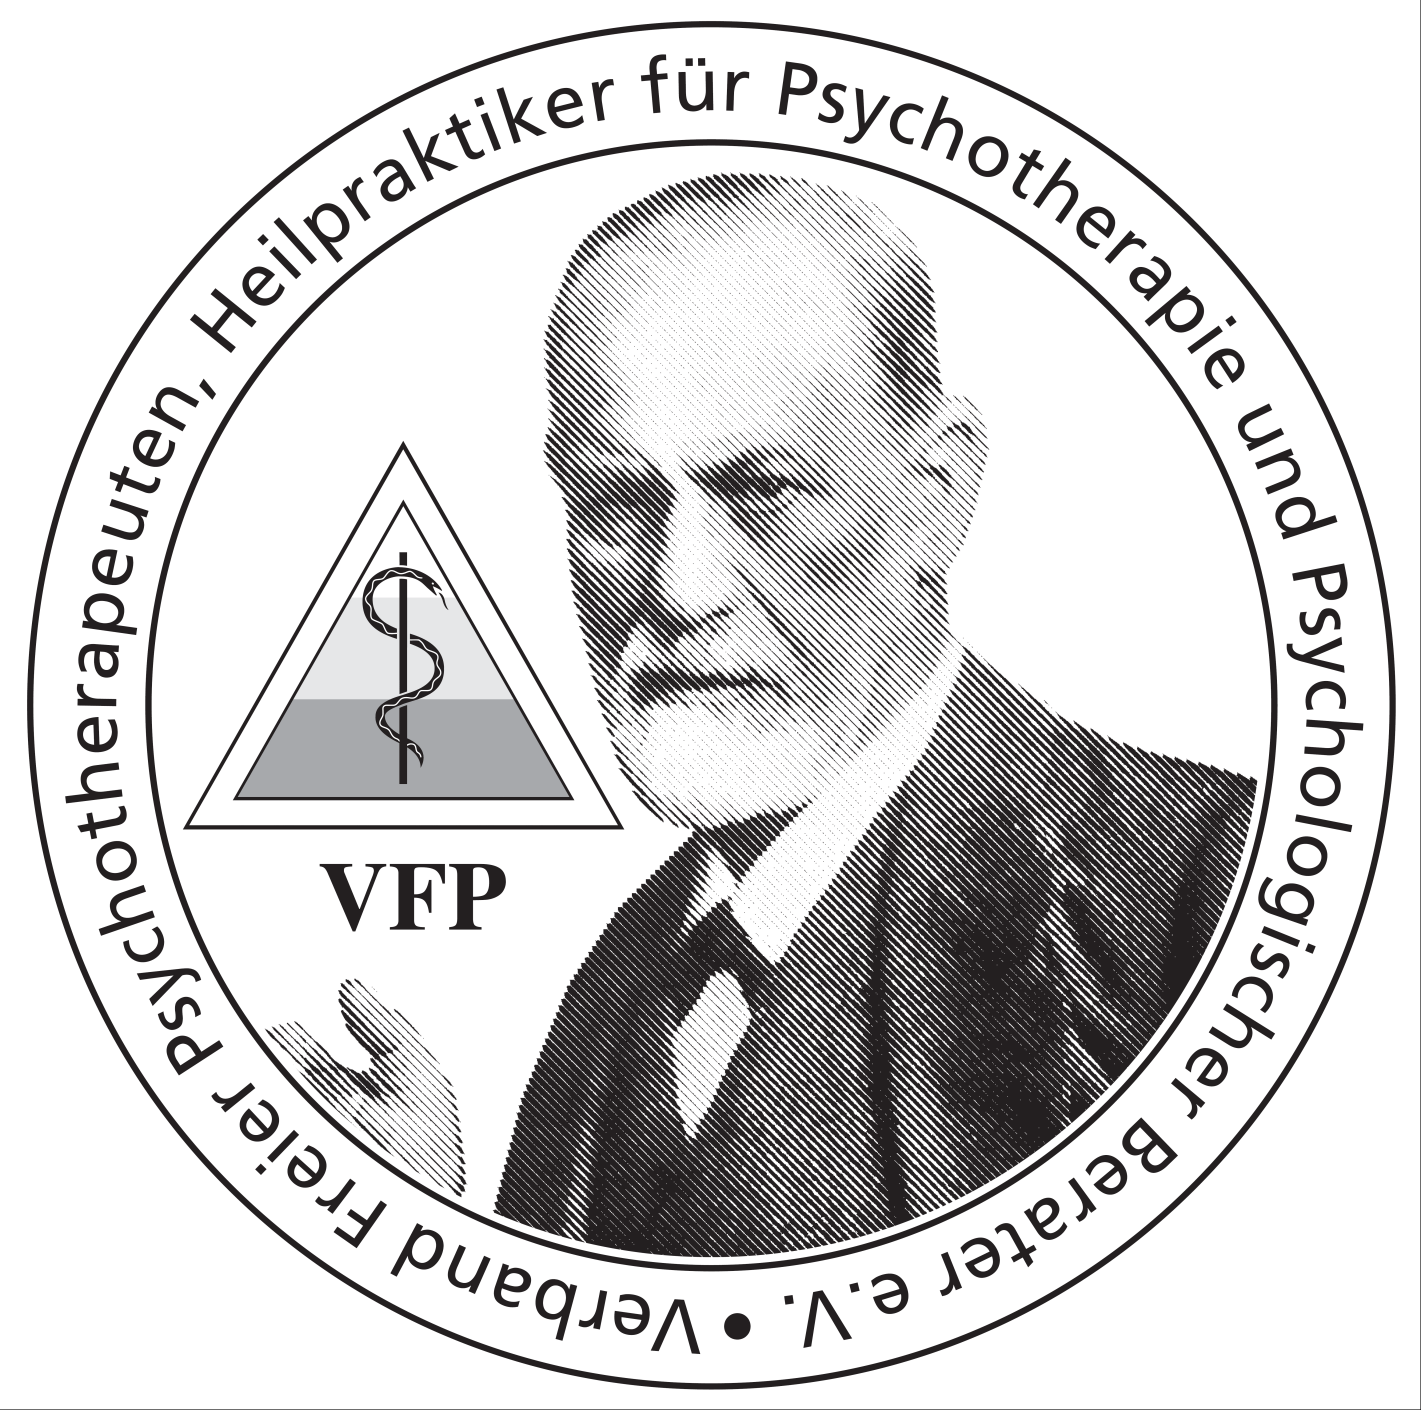 vfp_logo3